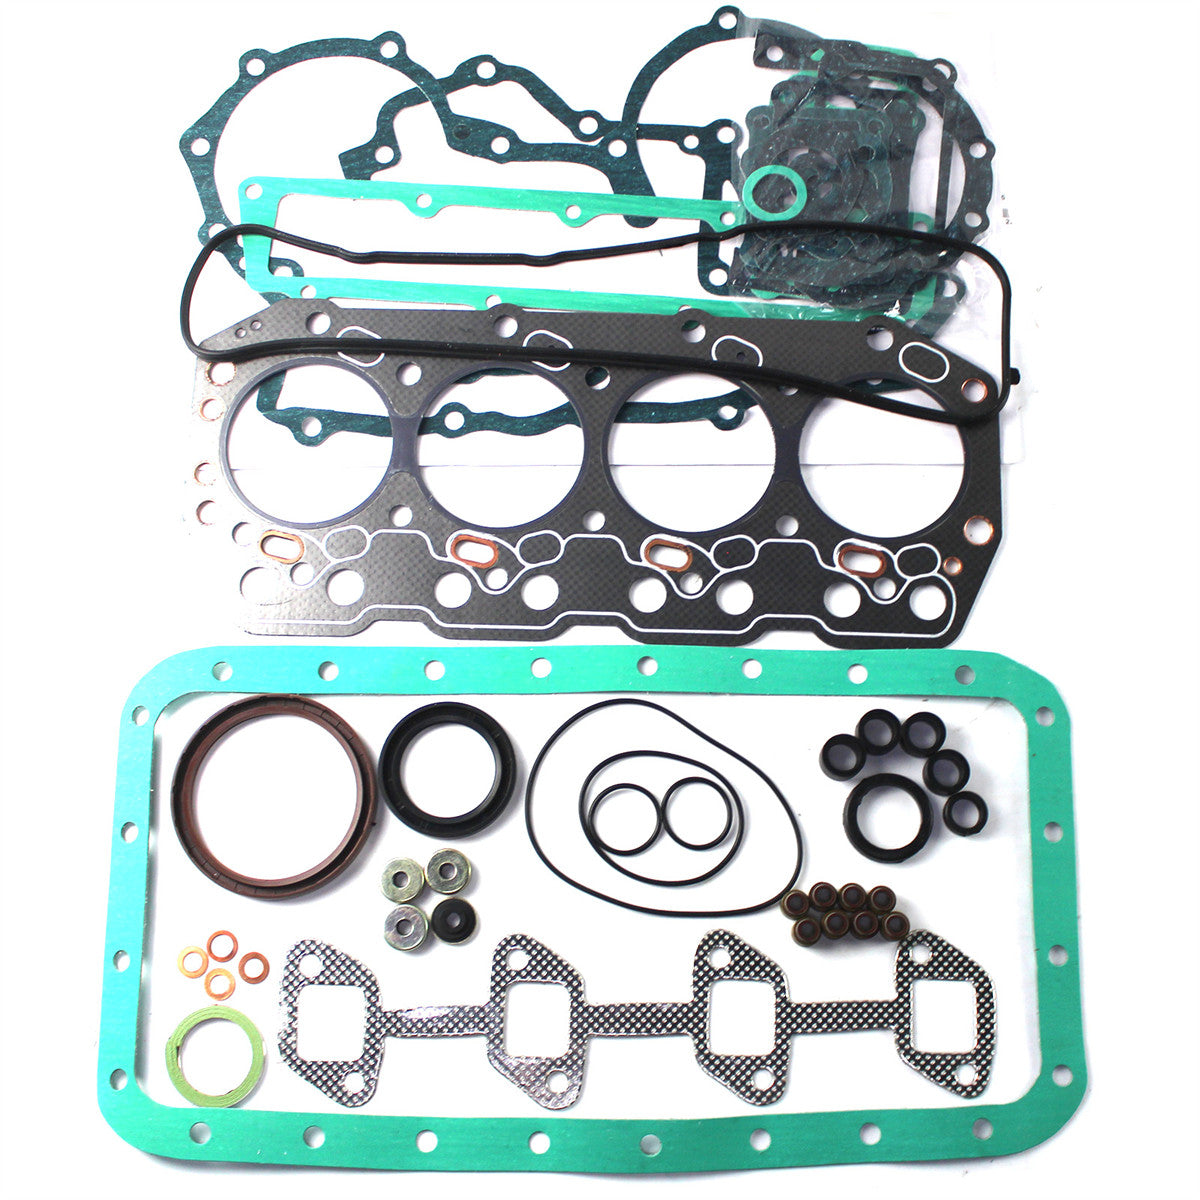 1Z Engine Gasket Kit for Toyota 5FD23 5FD20 5FD25 Forklift Truck – Sinocmp